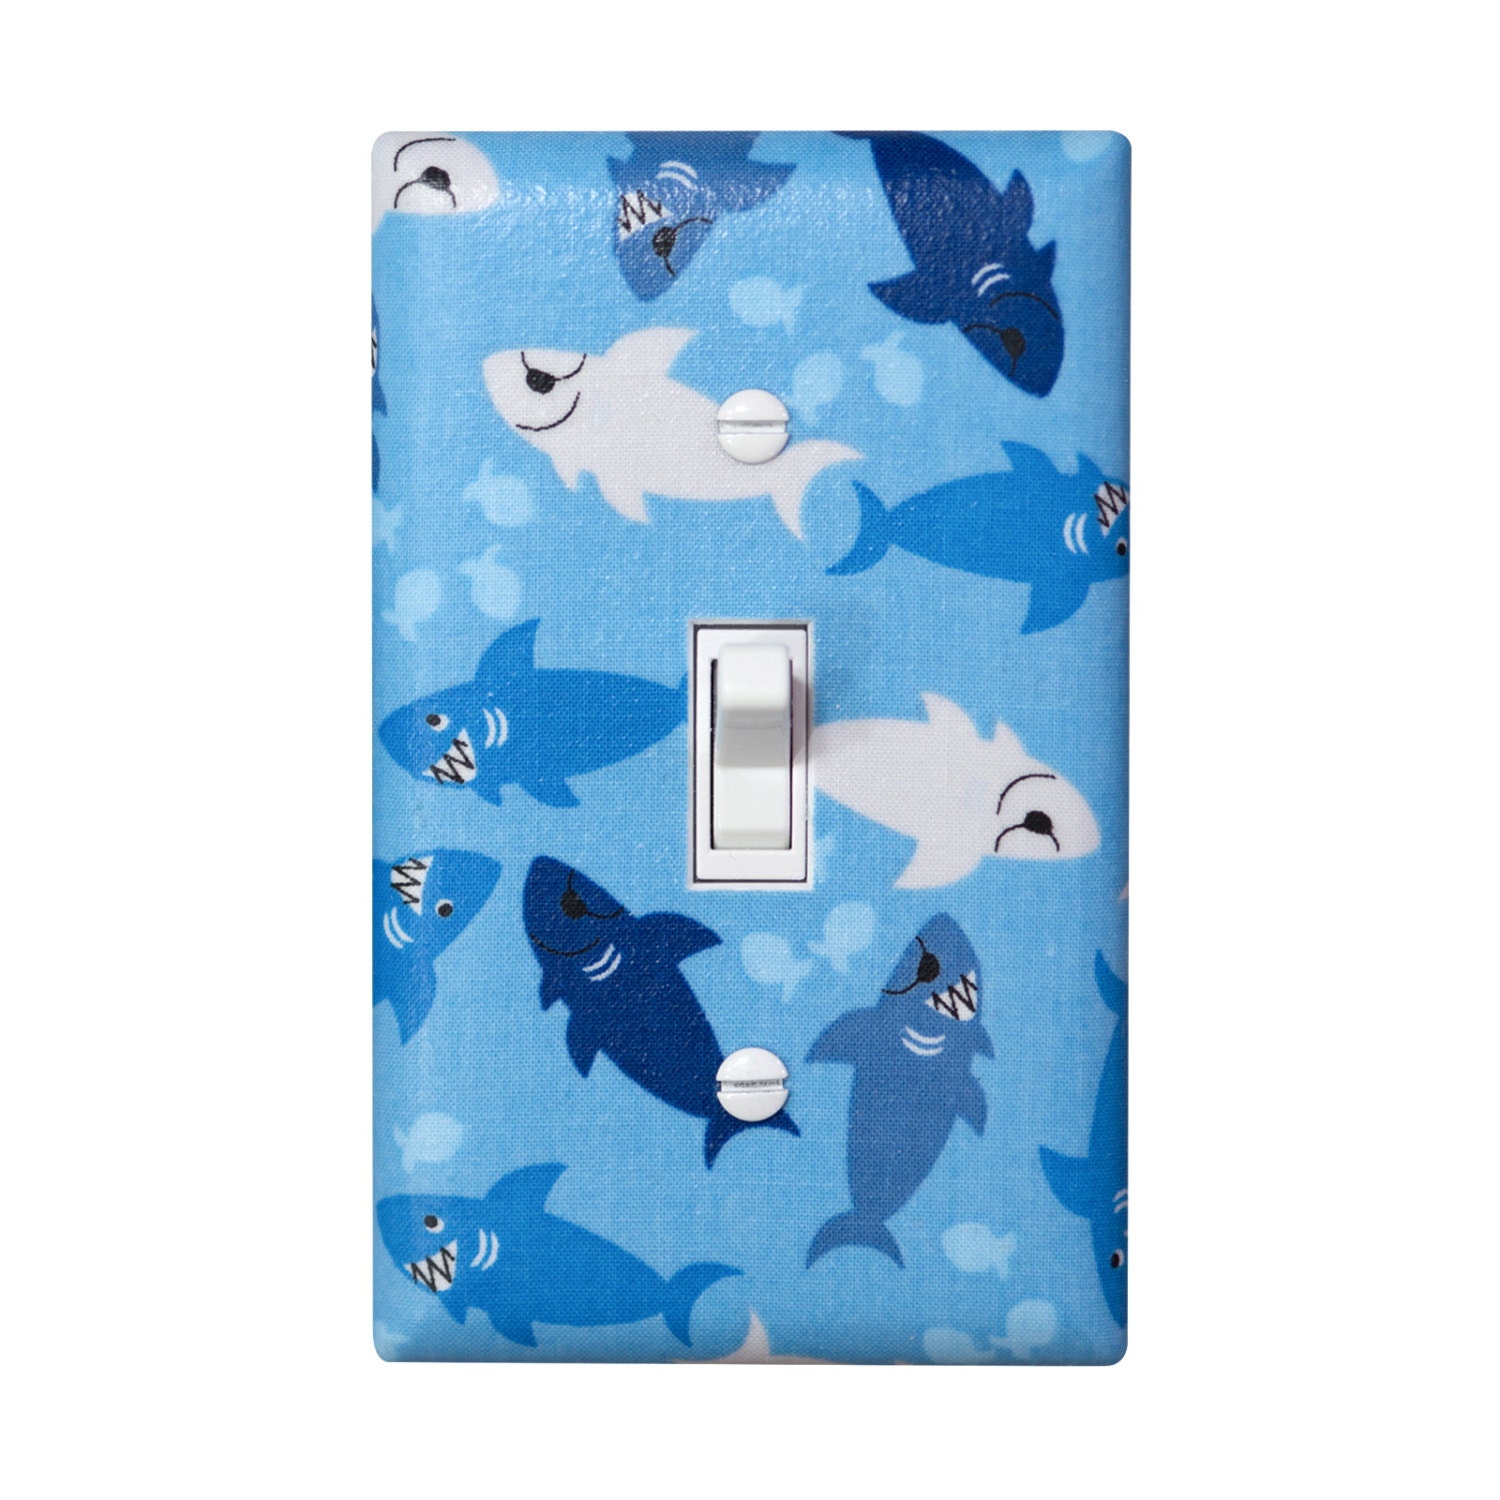 Shark Light Switch Plate Cover / Boys Nursery Bathroom Decor